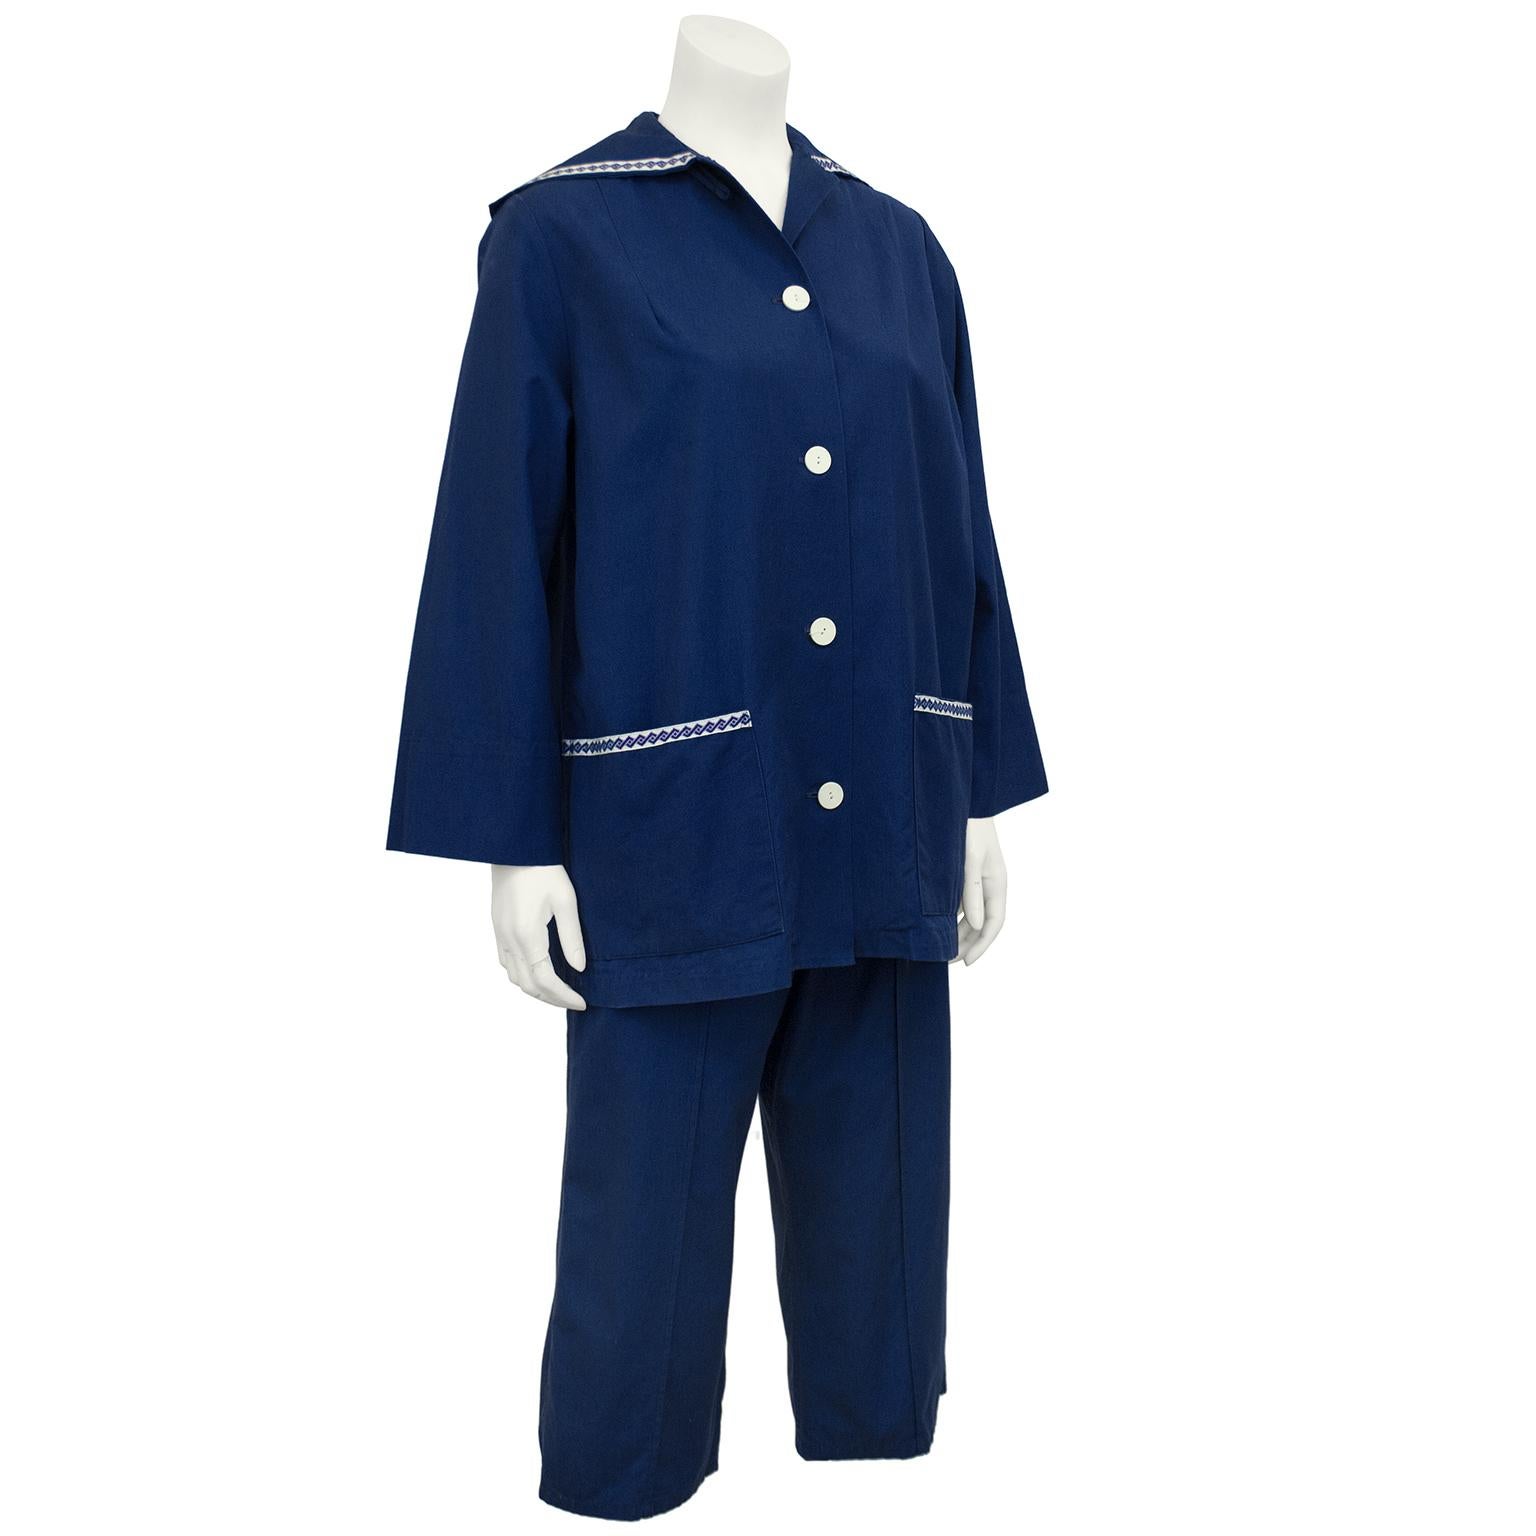 Adorable ensemble en coton indigo des années 1950 par le label White Stag basé à Portland, Oregon. La veste de style boxy a un col marin, des poches avant bordées de ruban blanc avec des détails de motifs carrés bleus et des boutons blancs sur le